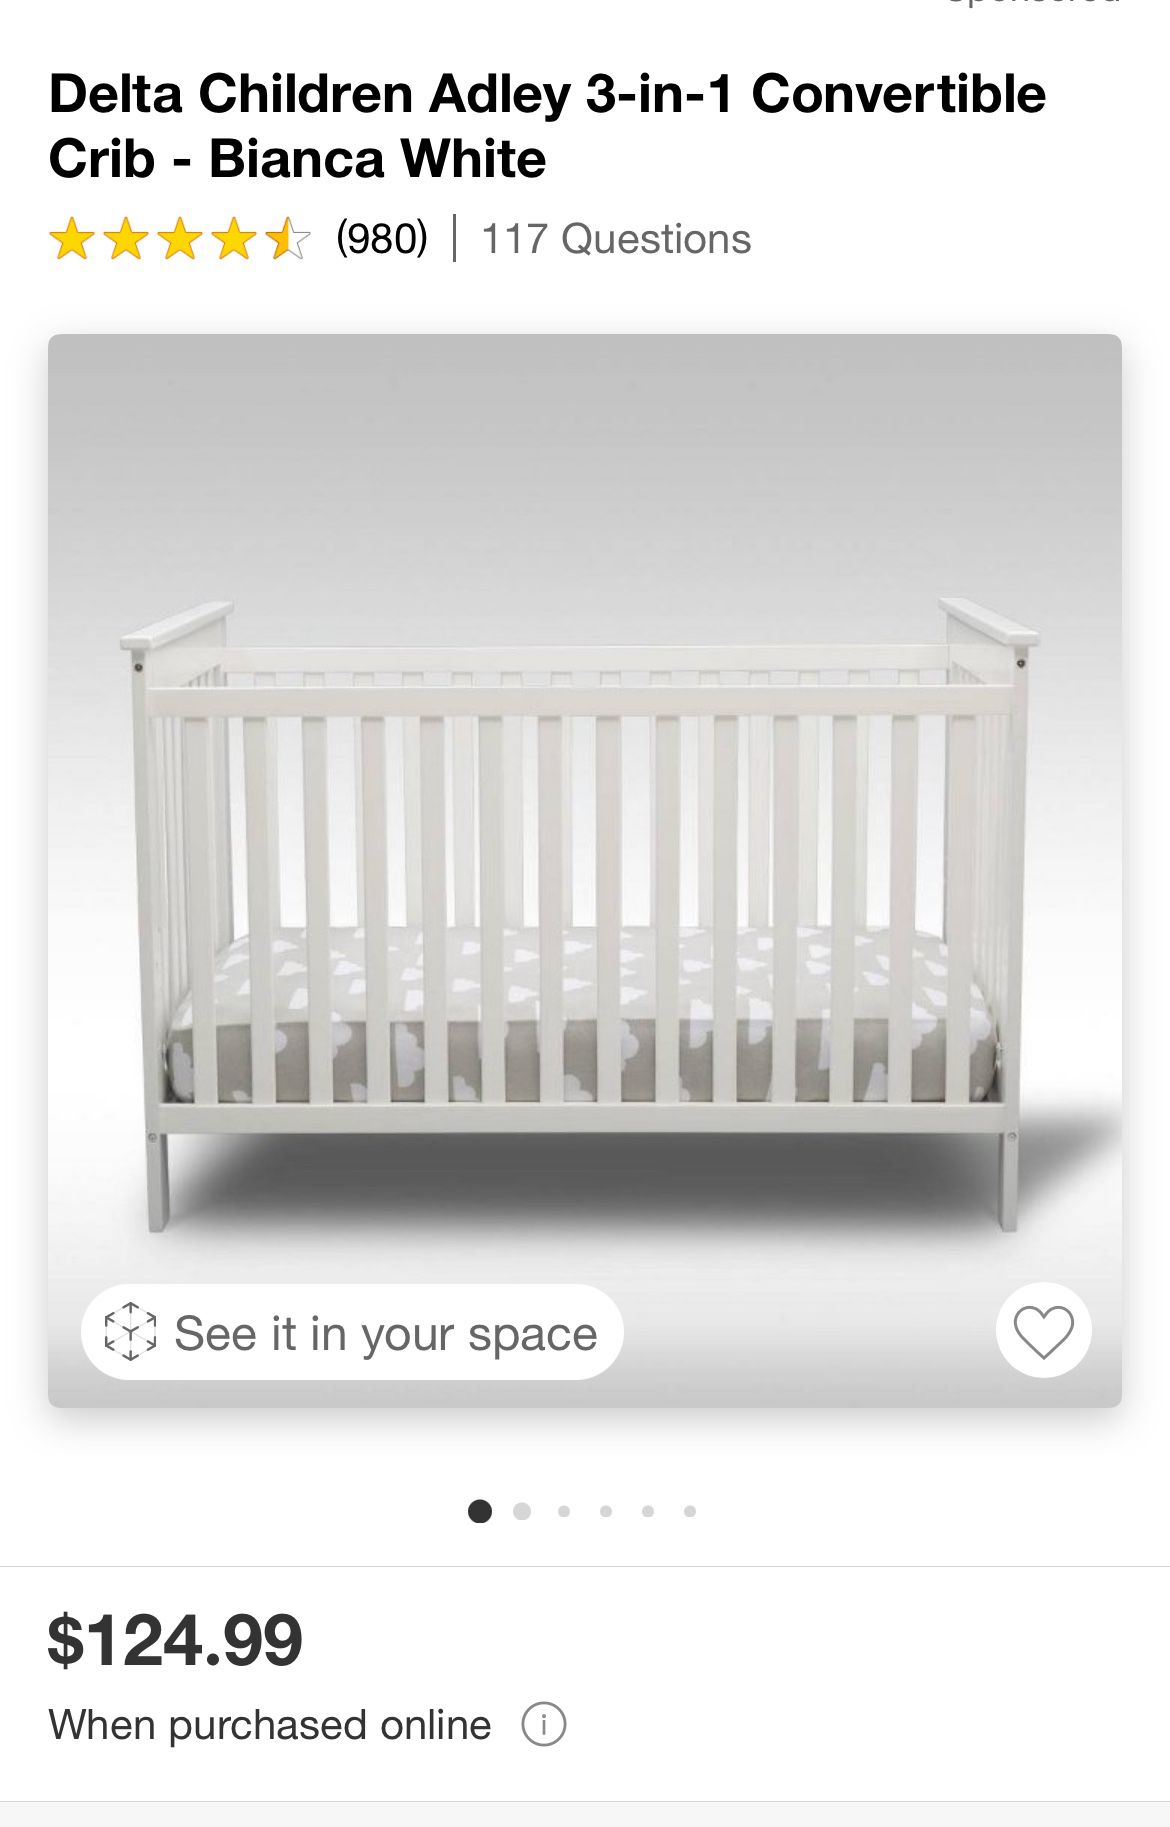 Baby crib And Mattress 